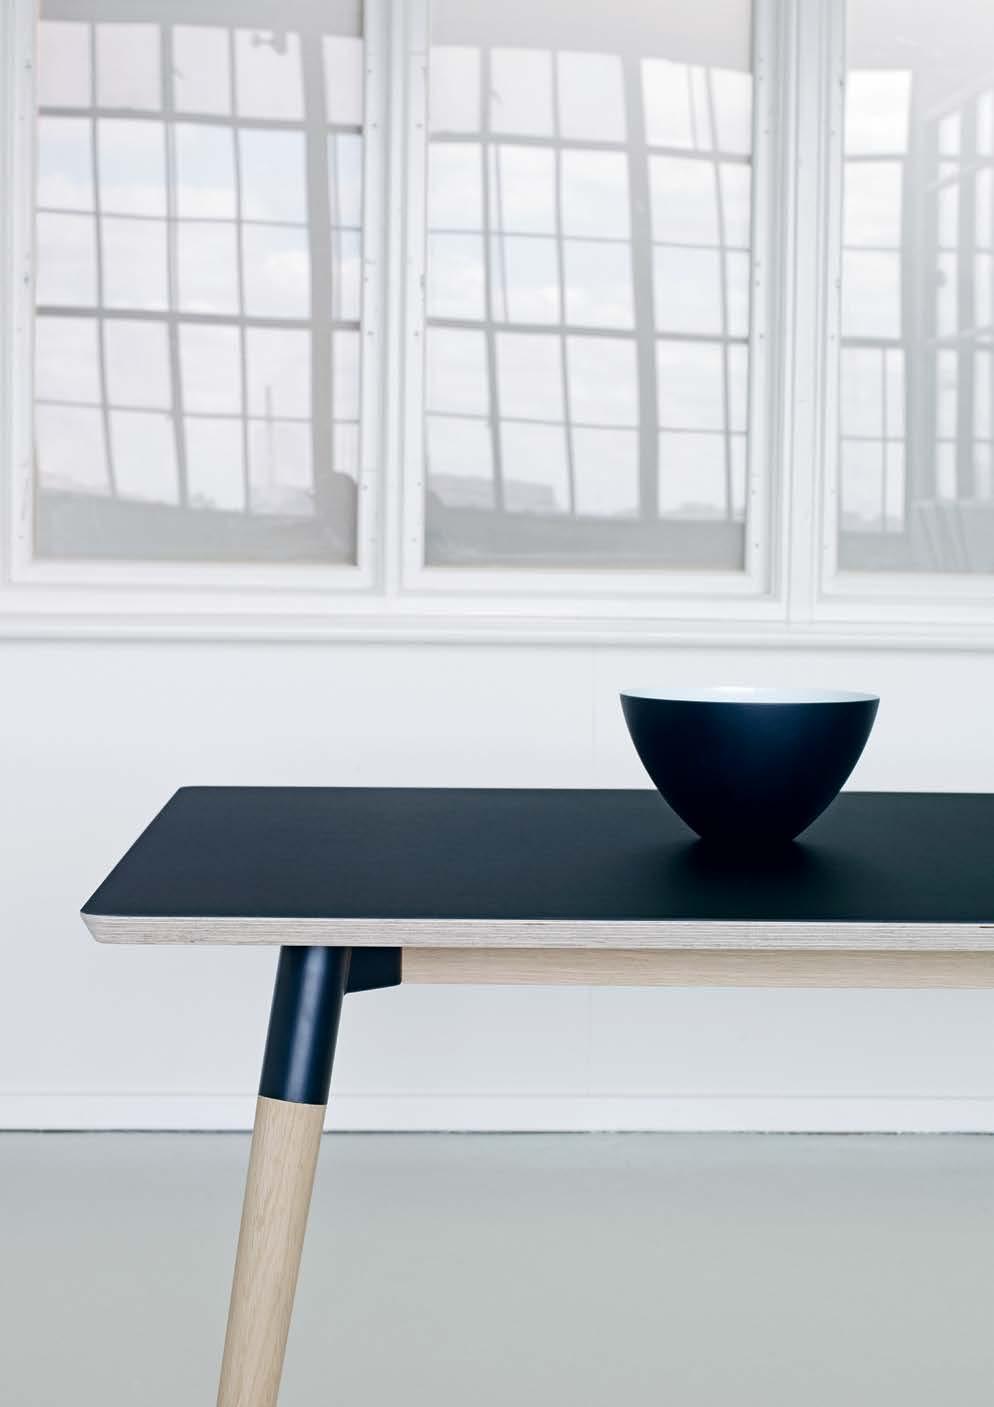 SLEIPNER DESIGNED BY STRAND + HVASS I Sleipner-bordet indgår stål og træ i en smuk kombination, som skaber en unik lethed. Materialevalget bidrager endvidere til stabilitet og funktionalitet.